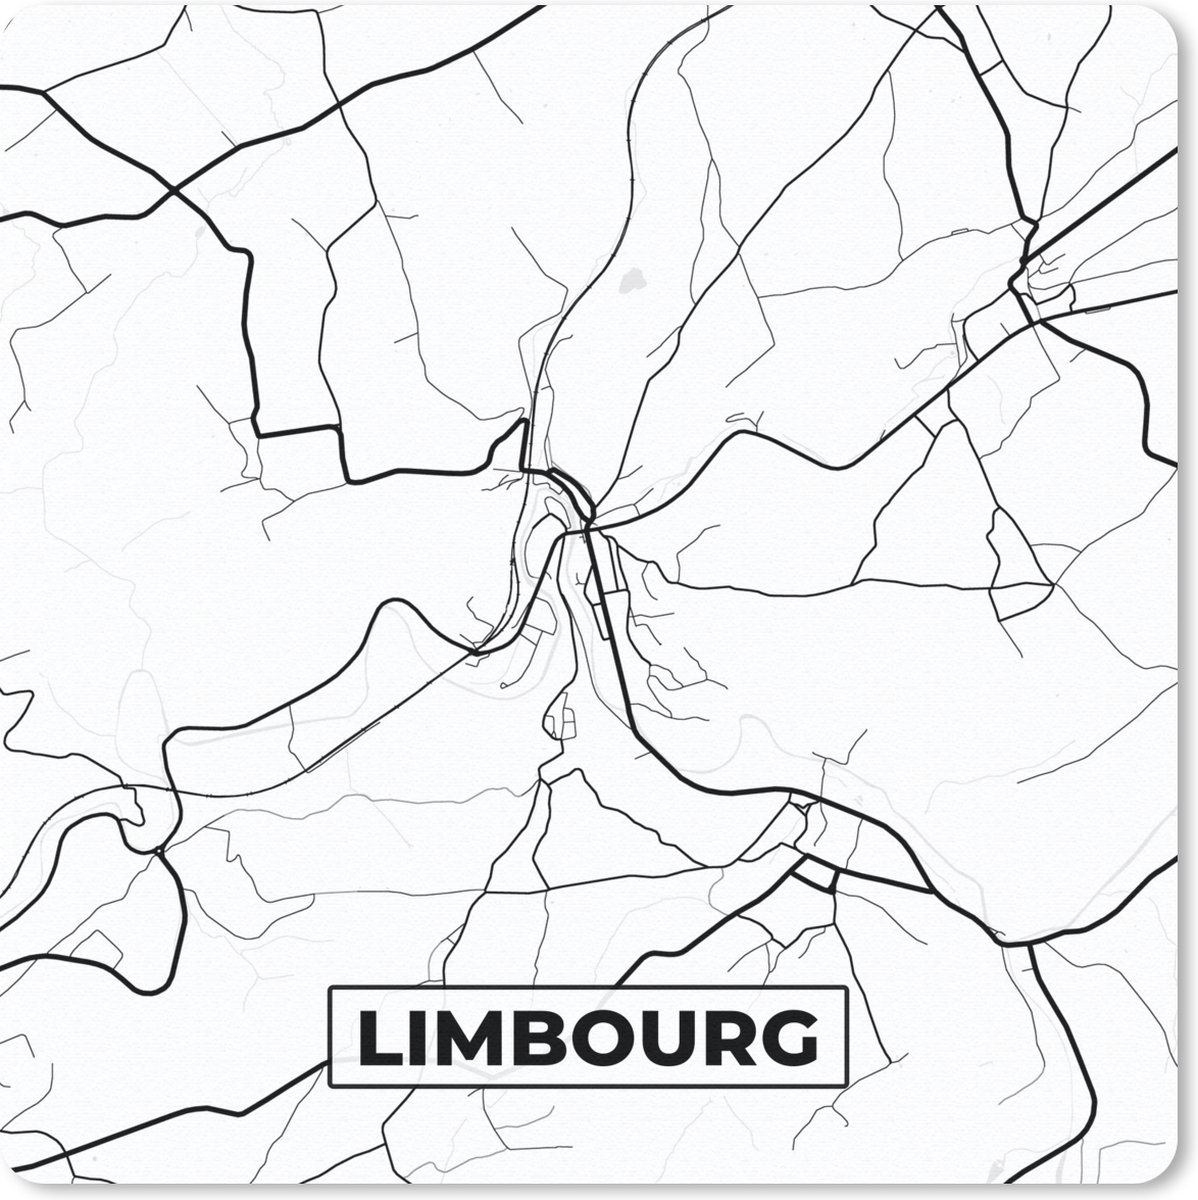 Muismat - Mousepad - Stadskaart – Zwart Wit - Kaart – Limbourg – België – Plattegrond - 30x30 cm - Muismatten